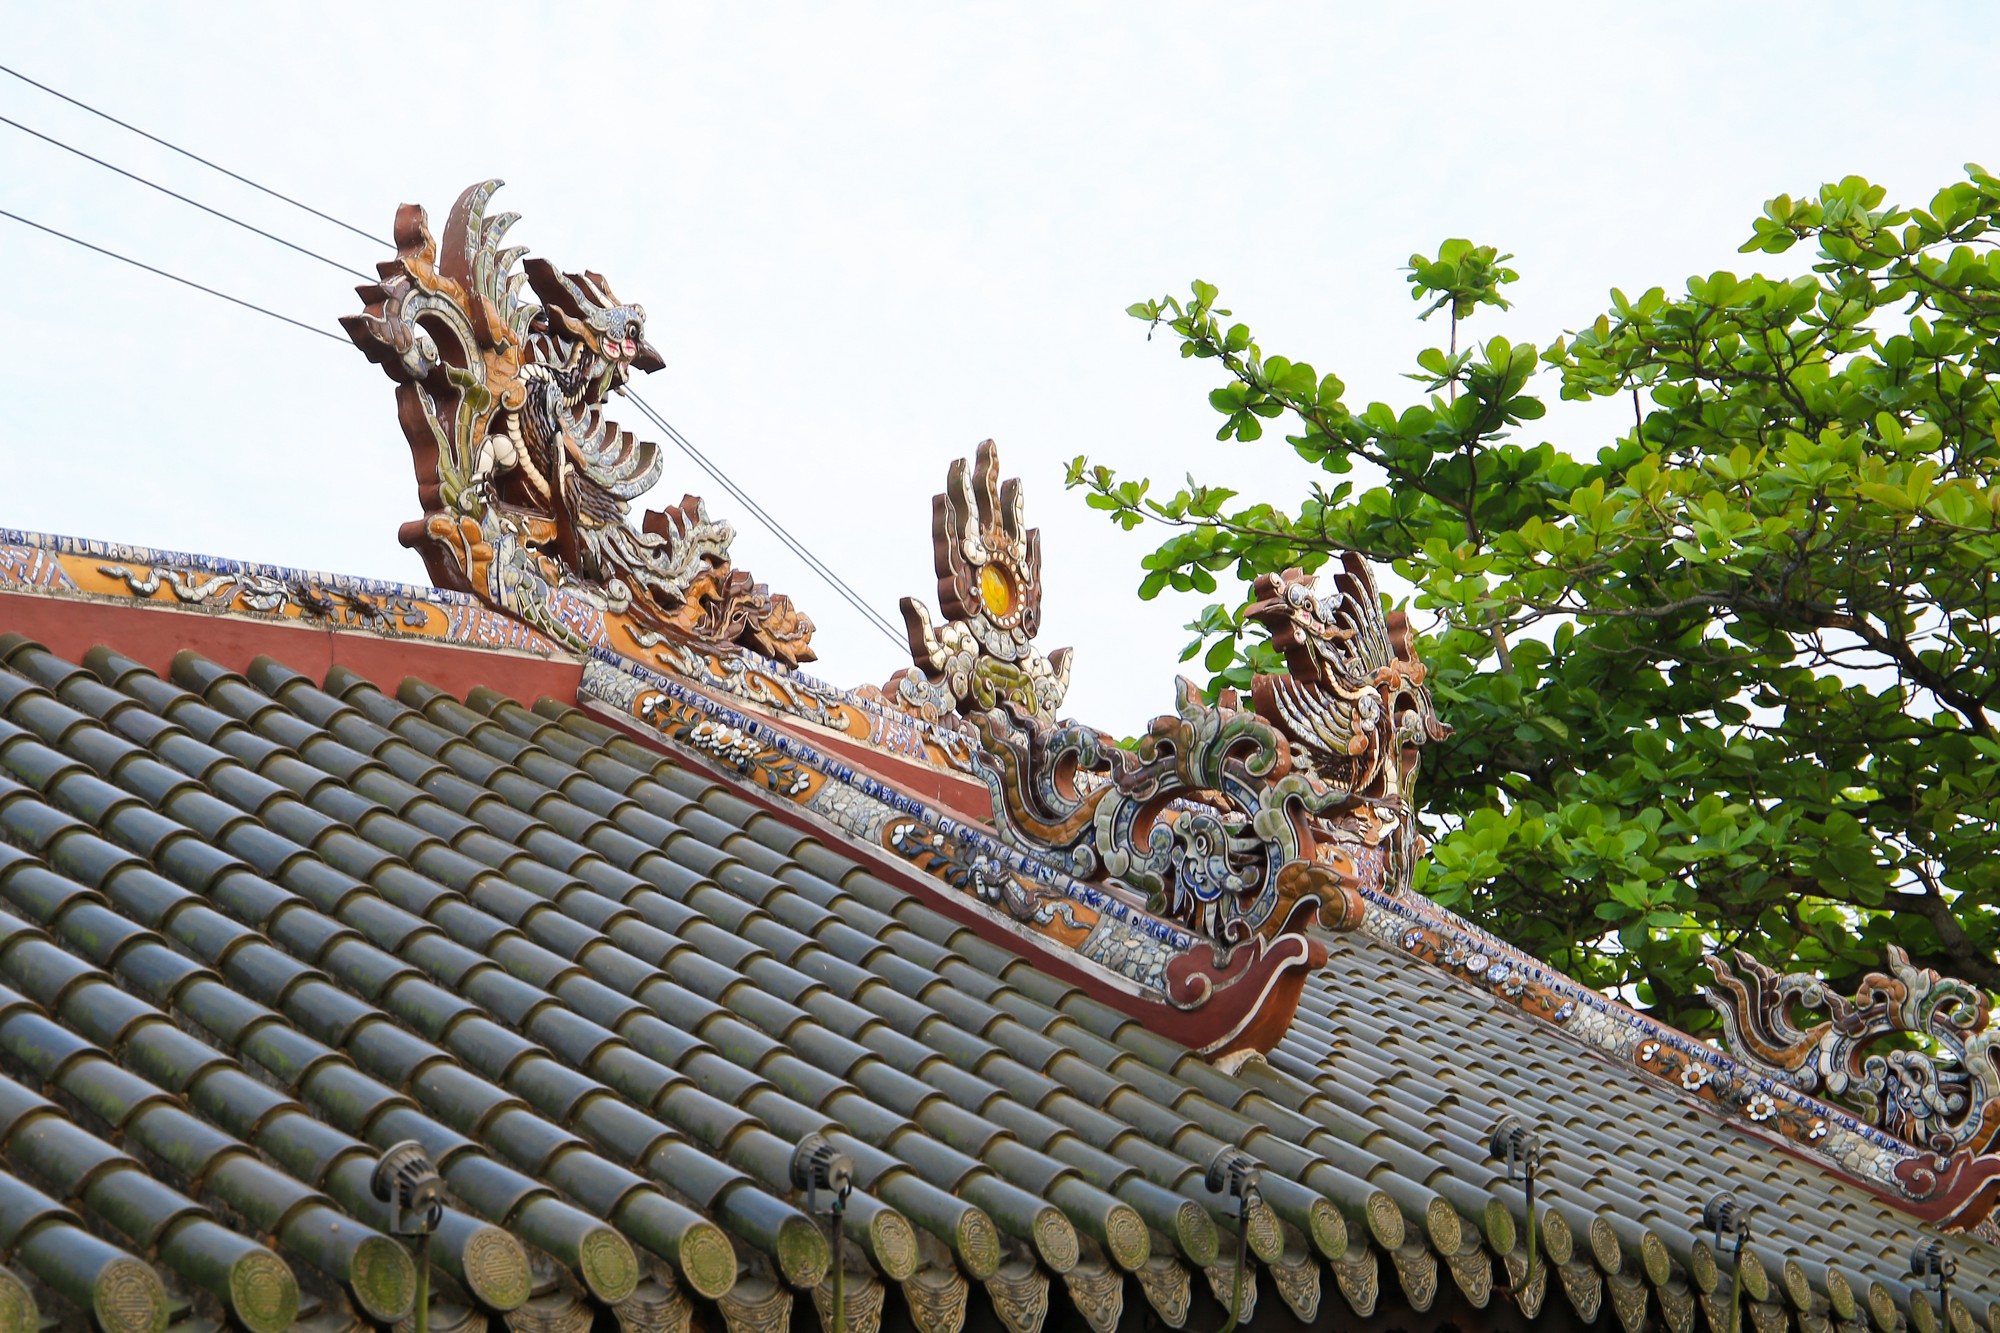 Trên cầu có mái che, lợp ngói lưu ly. Các hoạ tiết thì được trang trí bằng nghệ thuật khảm sành đặc trưng của xứ Huế. Ở giữa mái là đôi chim phượng đang tung cánh hướng về phía mặt trời.